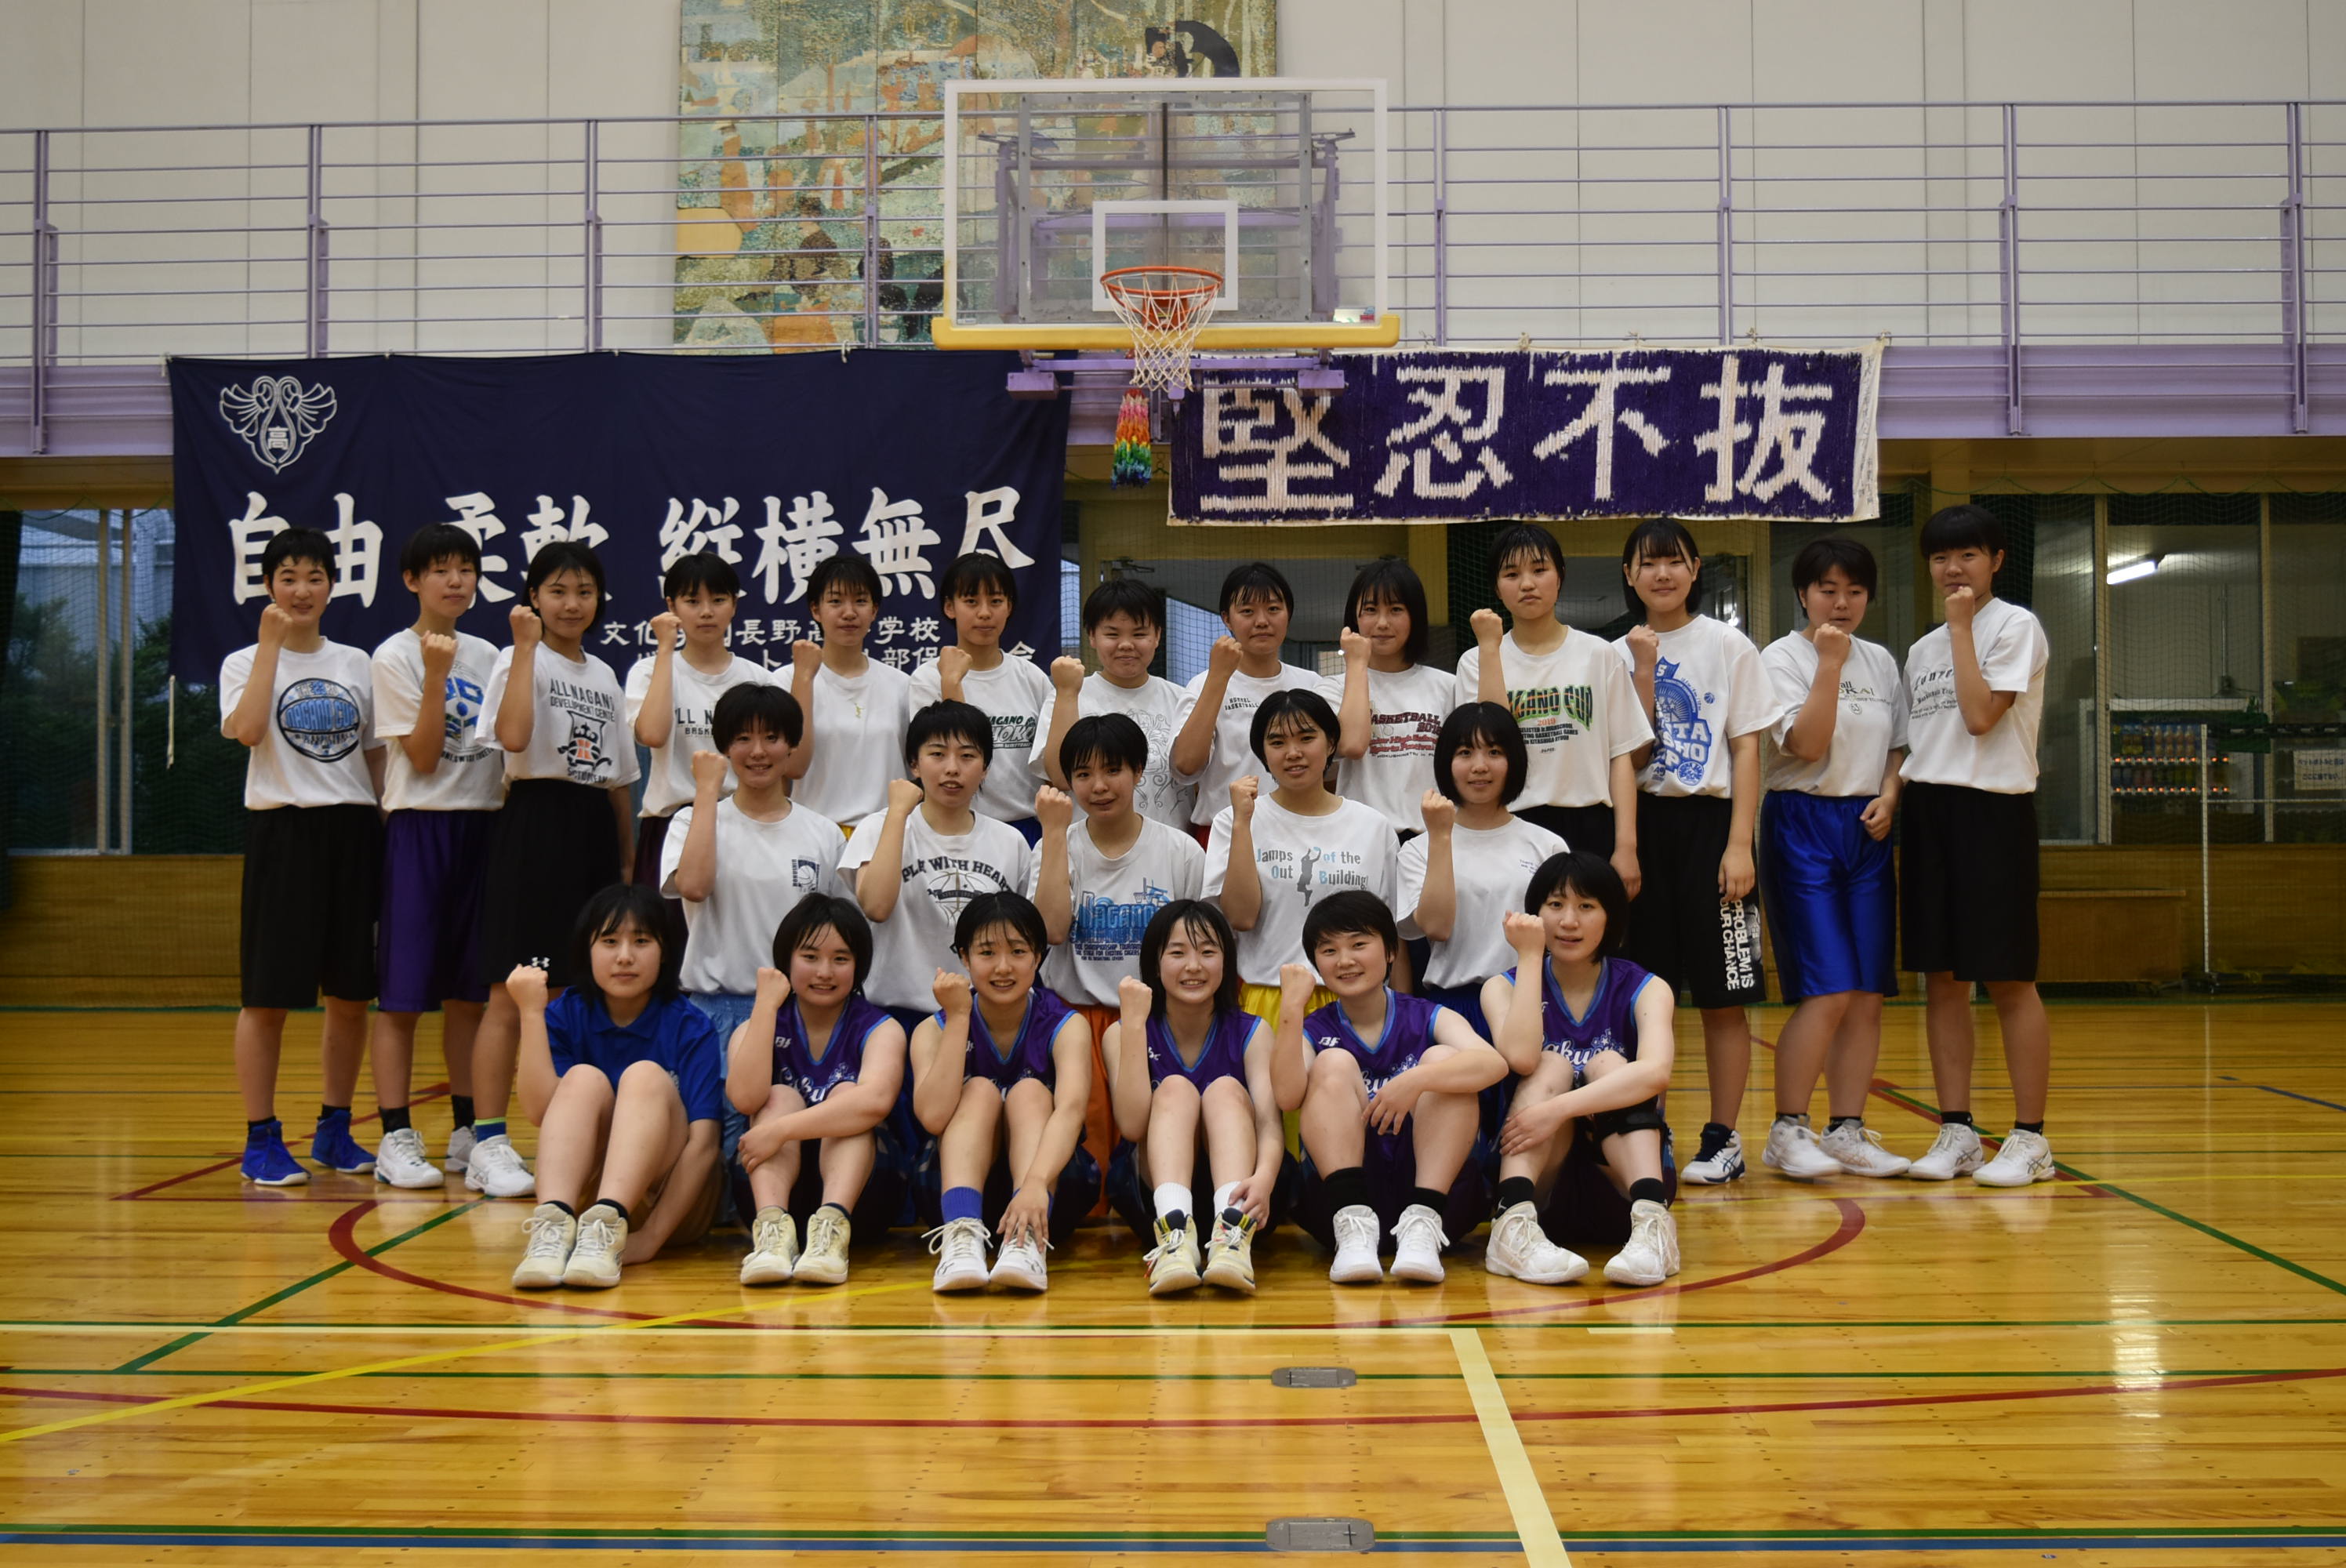 女子バスケットボール部 学校法人 文化長野学園 文化学園長野中学 高等学校